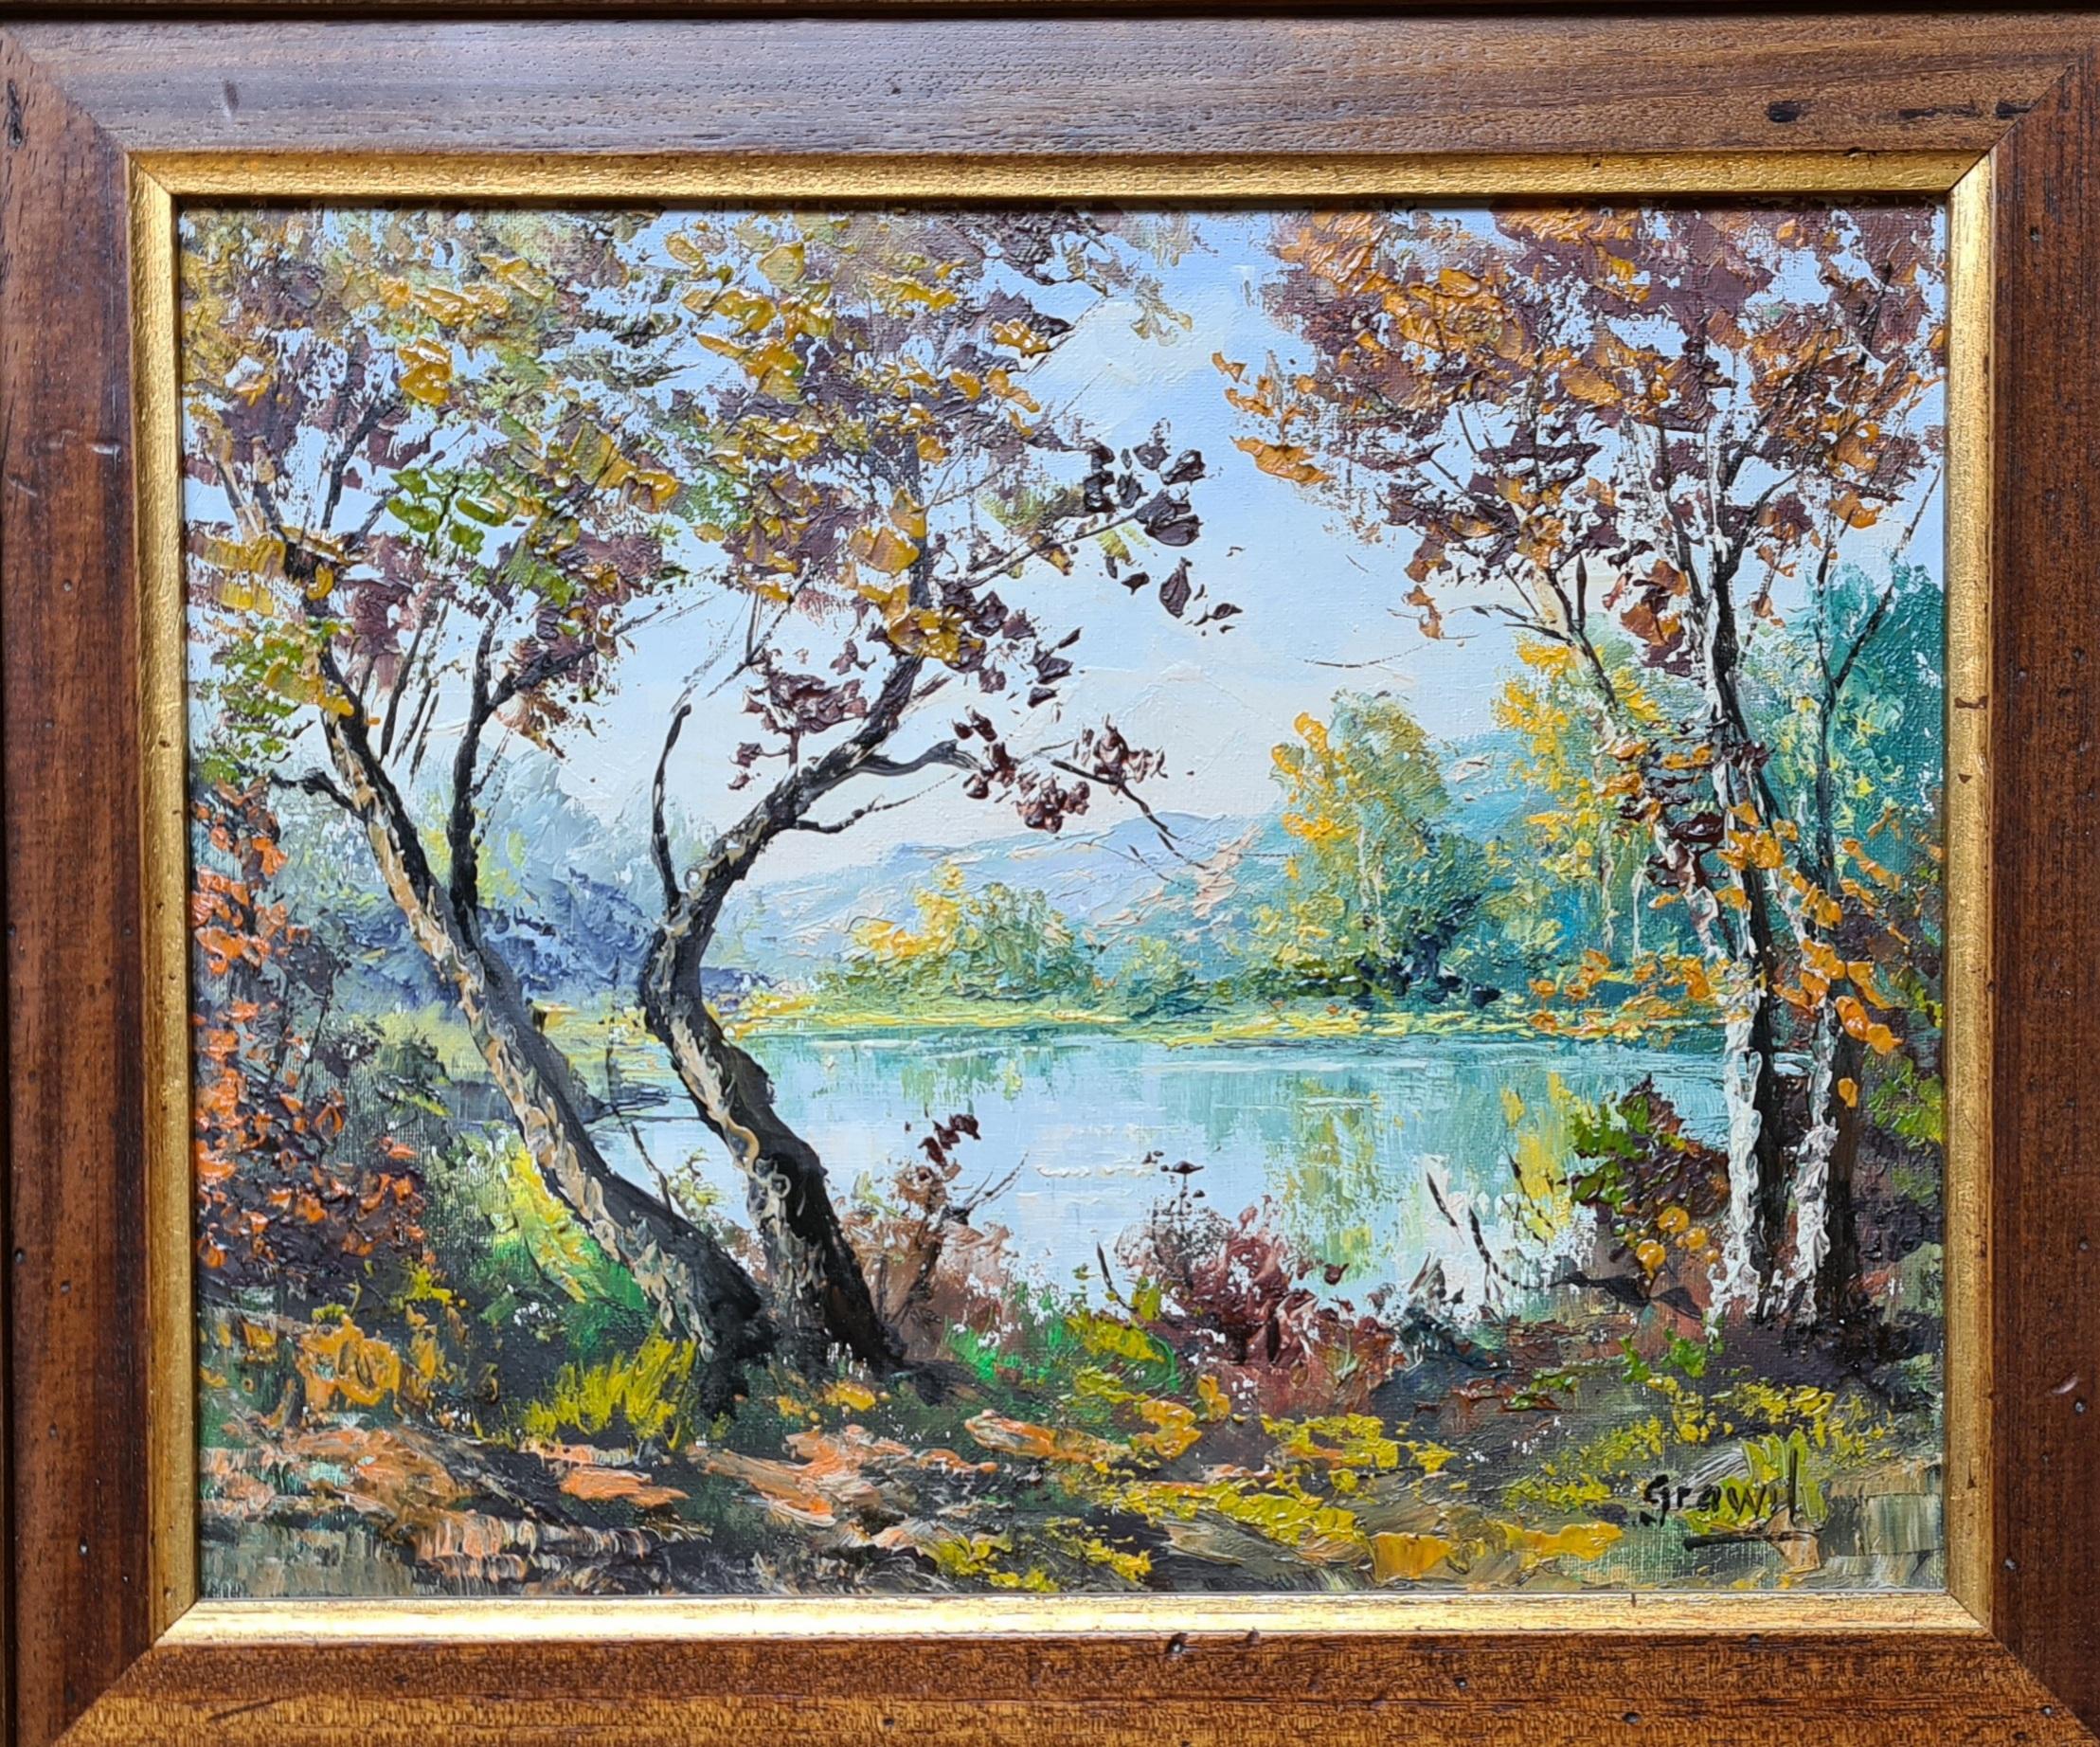 L'été au lac. Paysage français à l'huile sur toile. - Painting de Maurice Schwab aka 'Grawil'